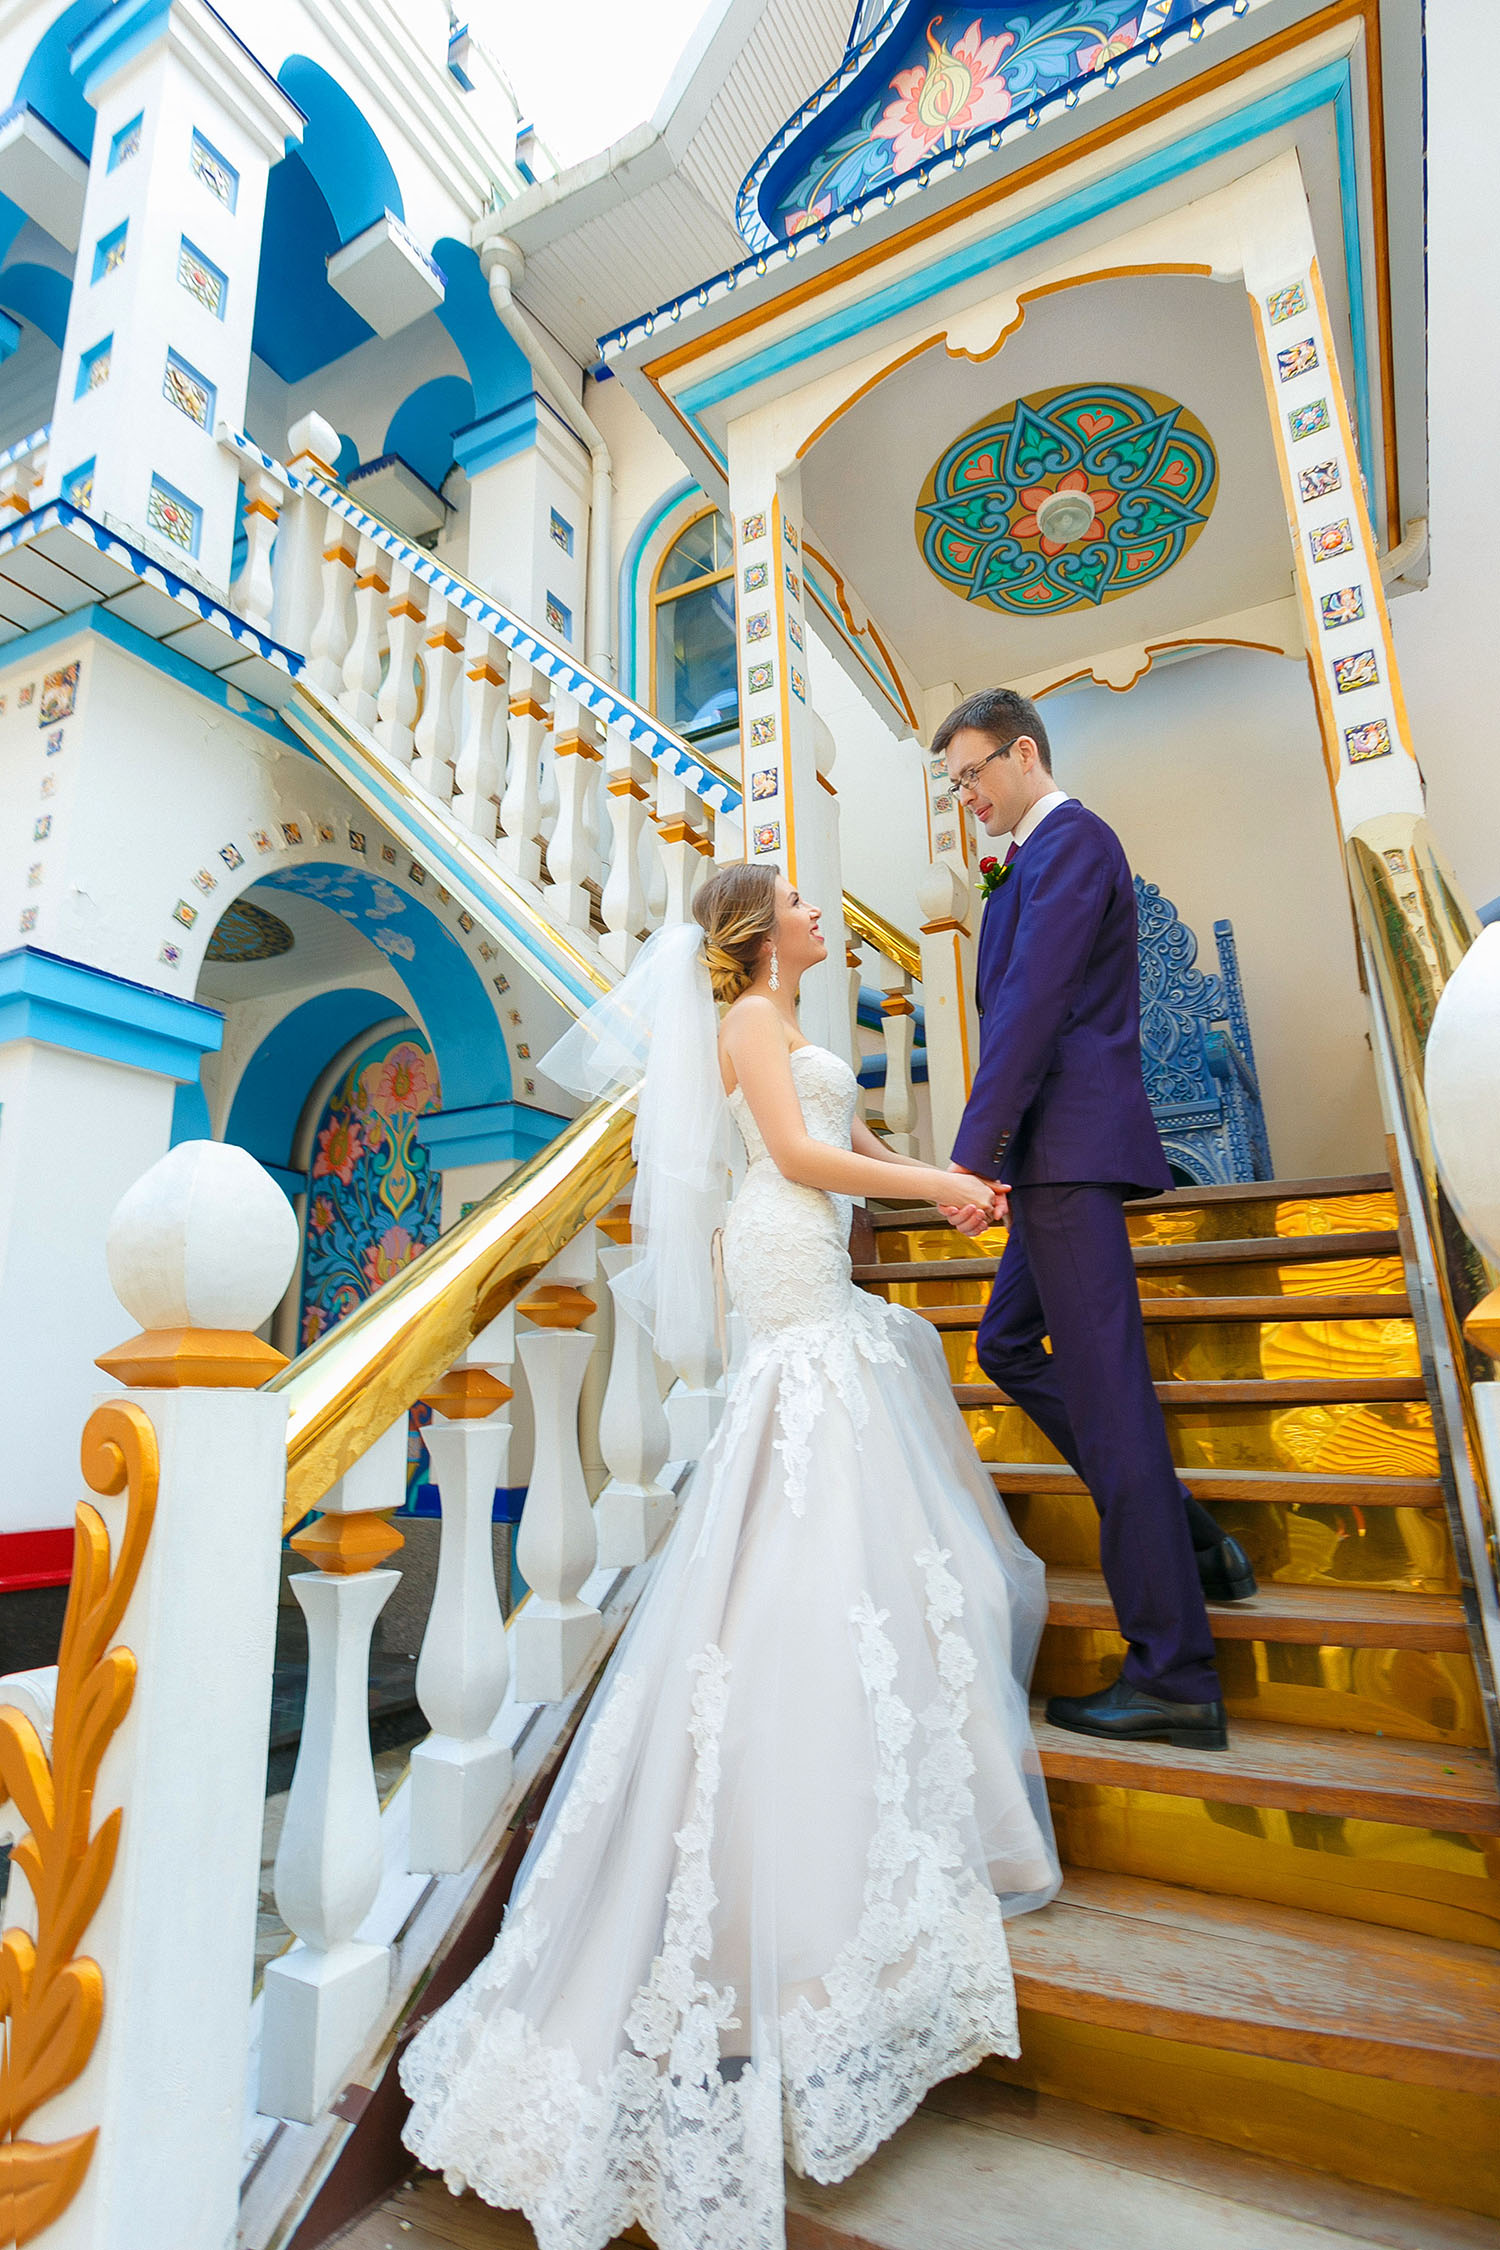 дворец бракосочетания 4 управления загс москвы